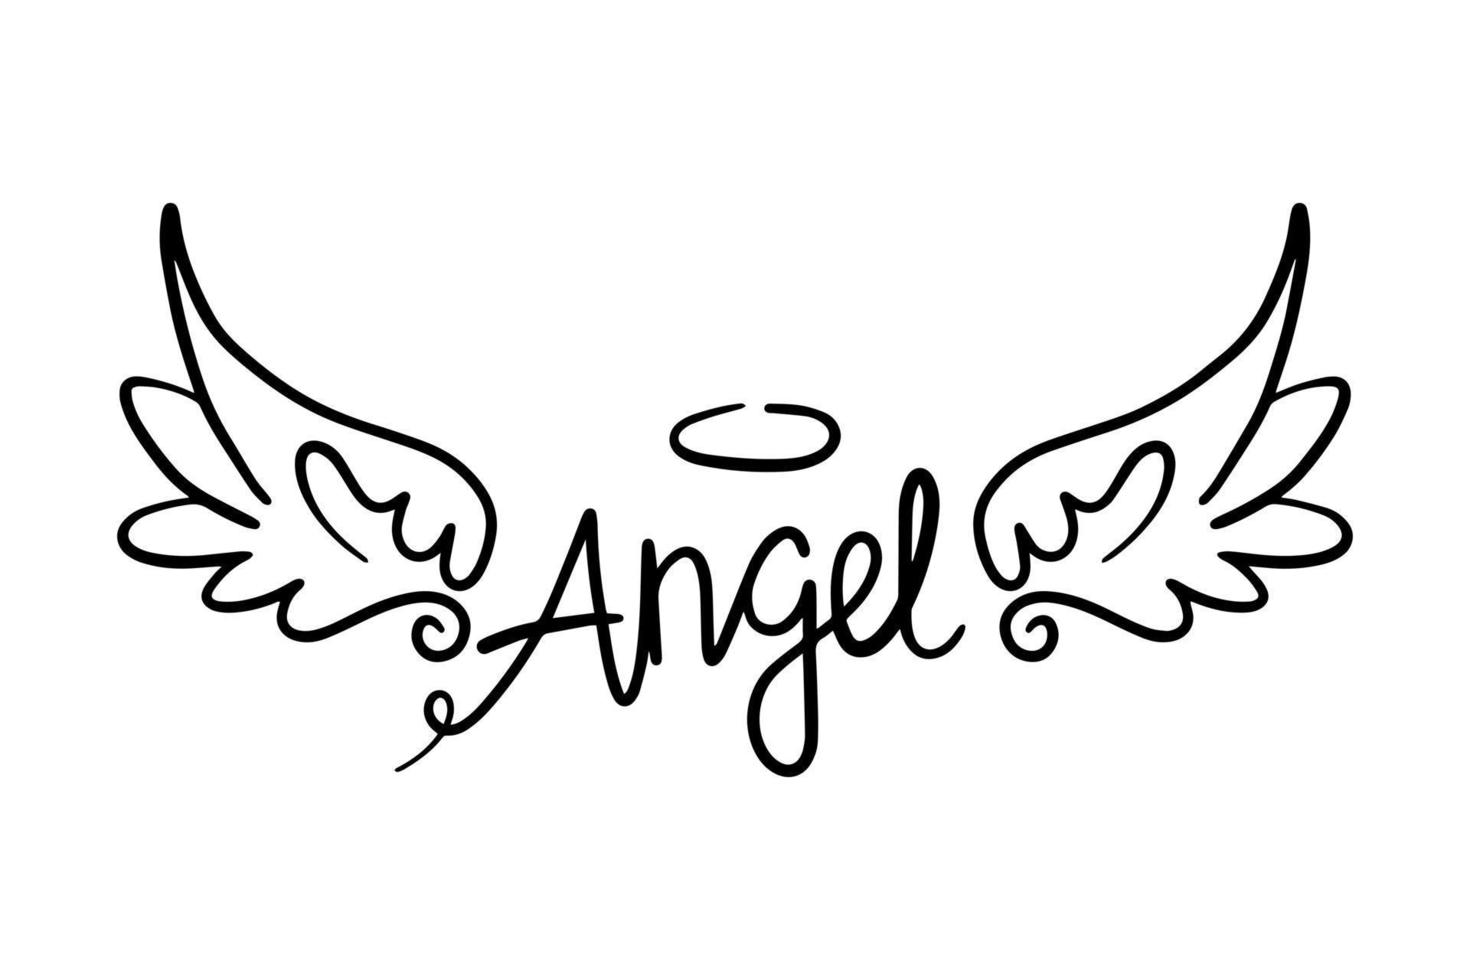 schetsen engel Vleugels. engel veer vleugel. vector illustratie.